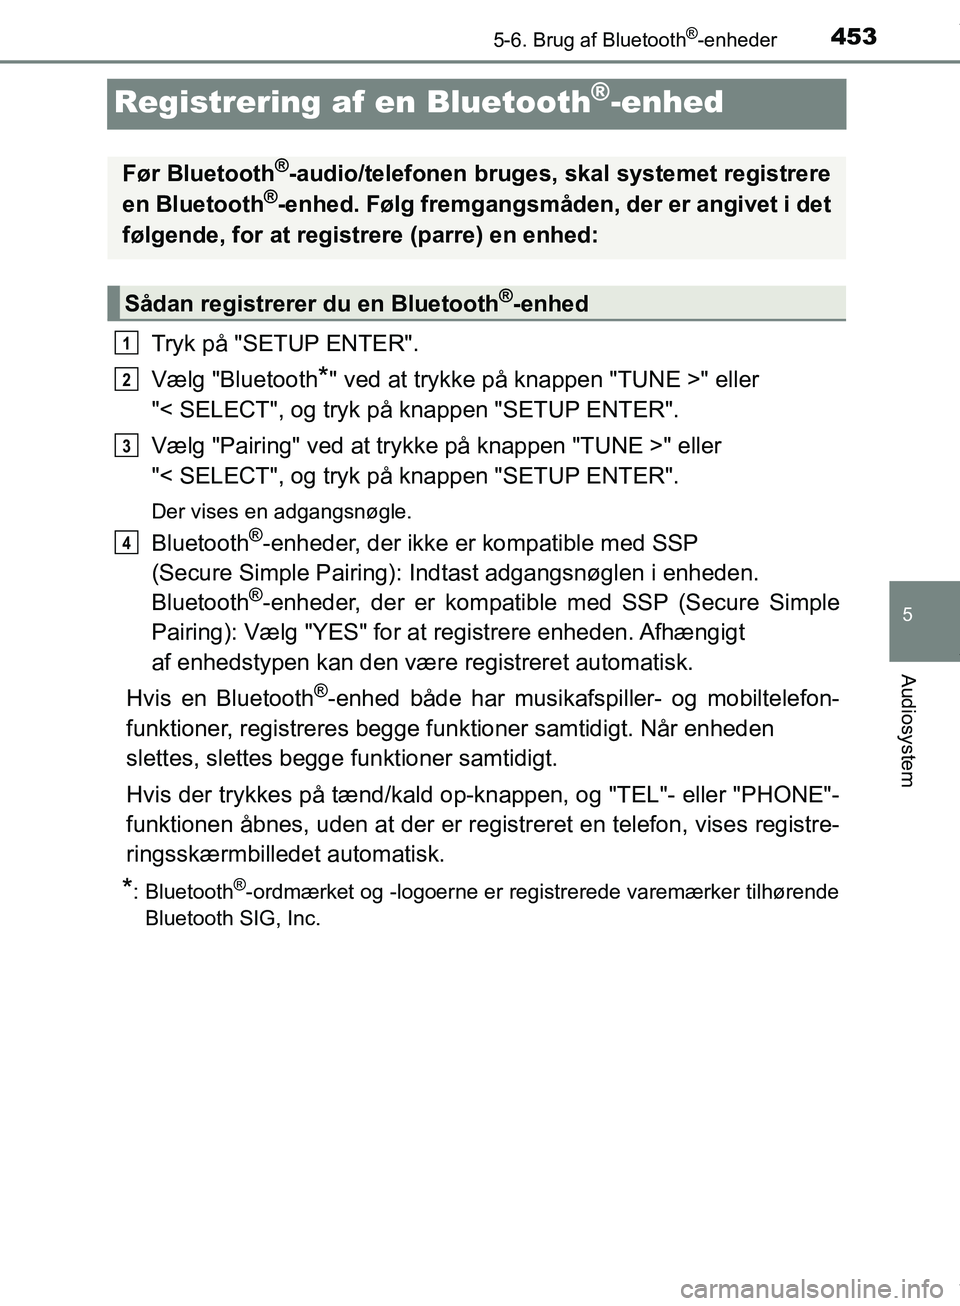 TOYOTA HILUX 2018  Brugsanvisning (in Danish) 453
5
5-6. Brug af Bluetooth®-enheder
Audiosystem
Hilux OM0K375DK
Registrering af en Bluetooth®-enhed
Tryk på "SETUP ENTER".
Vælg "Bluetooth
*" ved at trykke på knappen "TUNE >" eller 
"< SELECT"